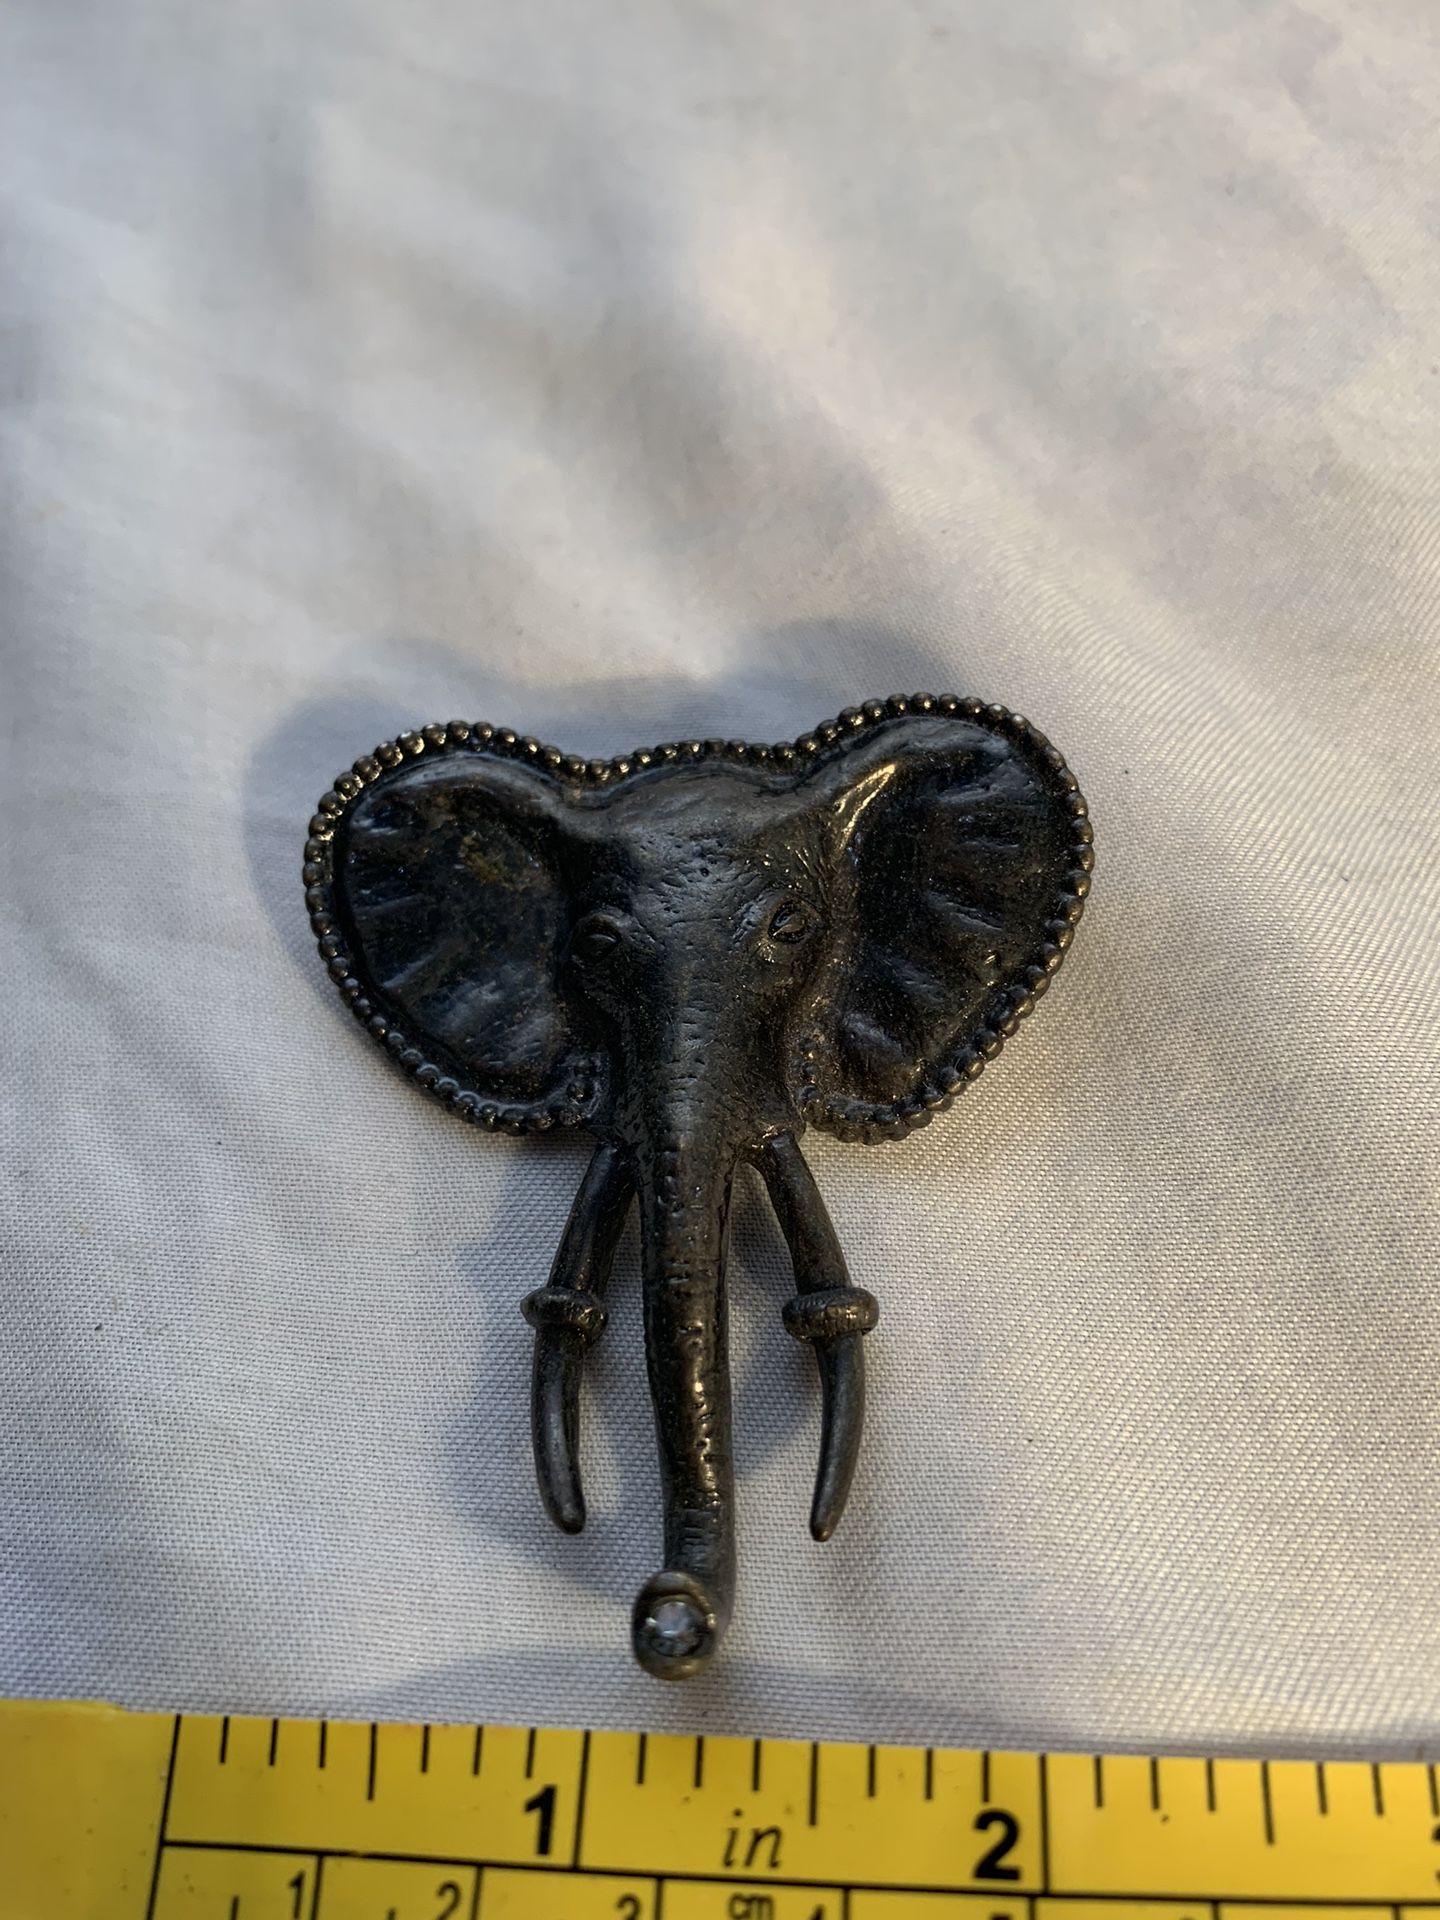 Vintage Elephant Head Brooch